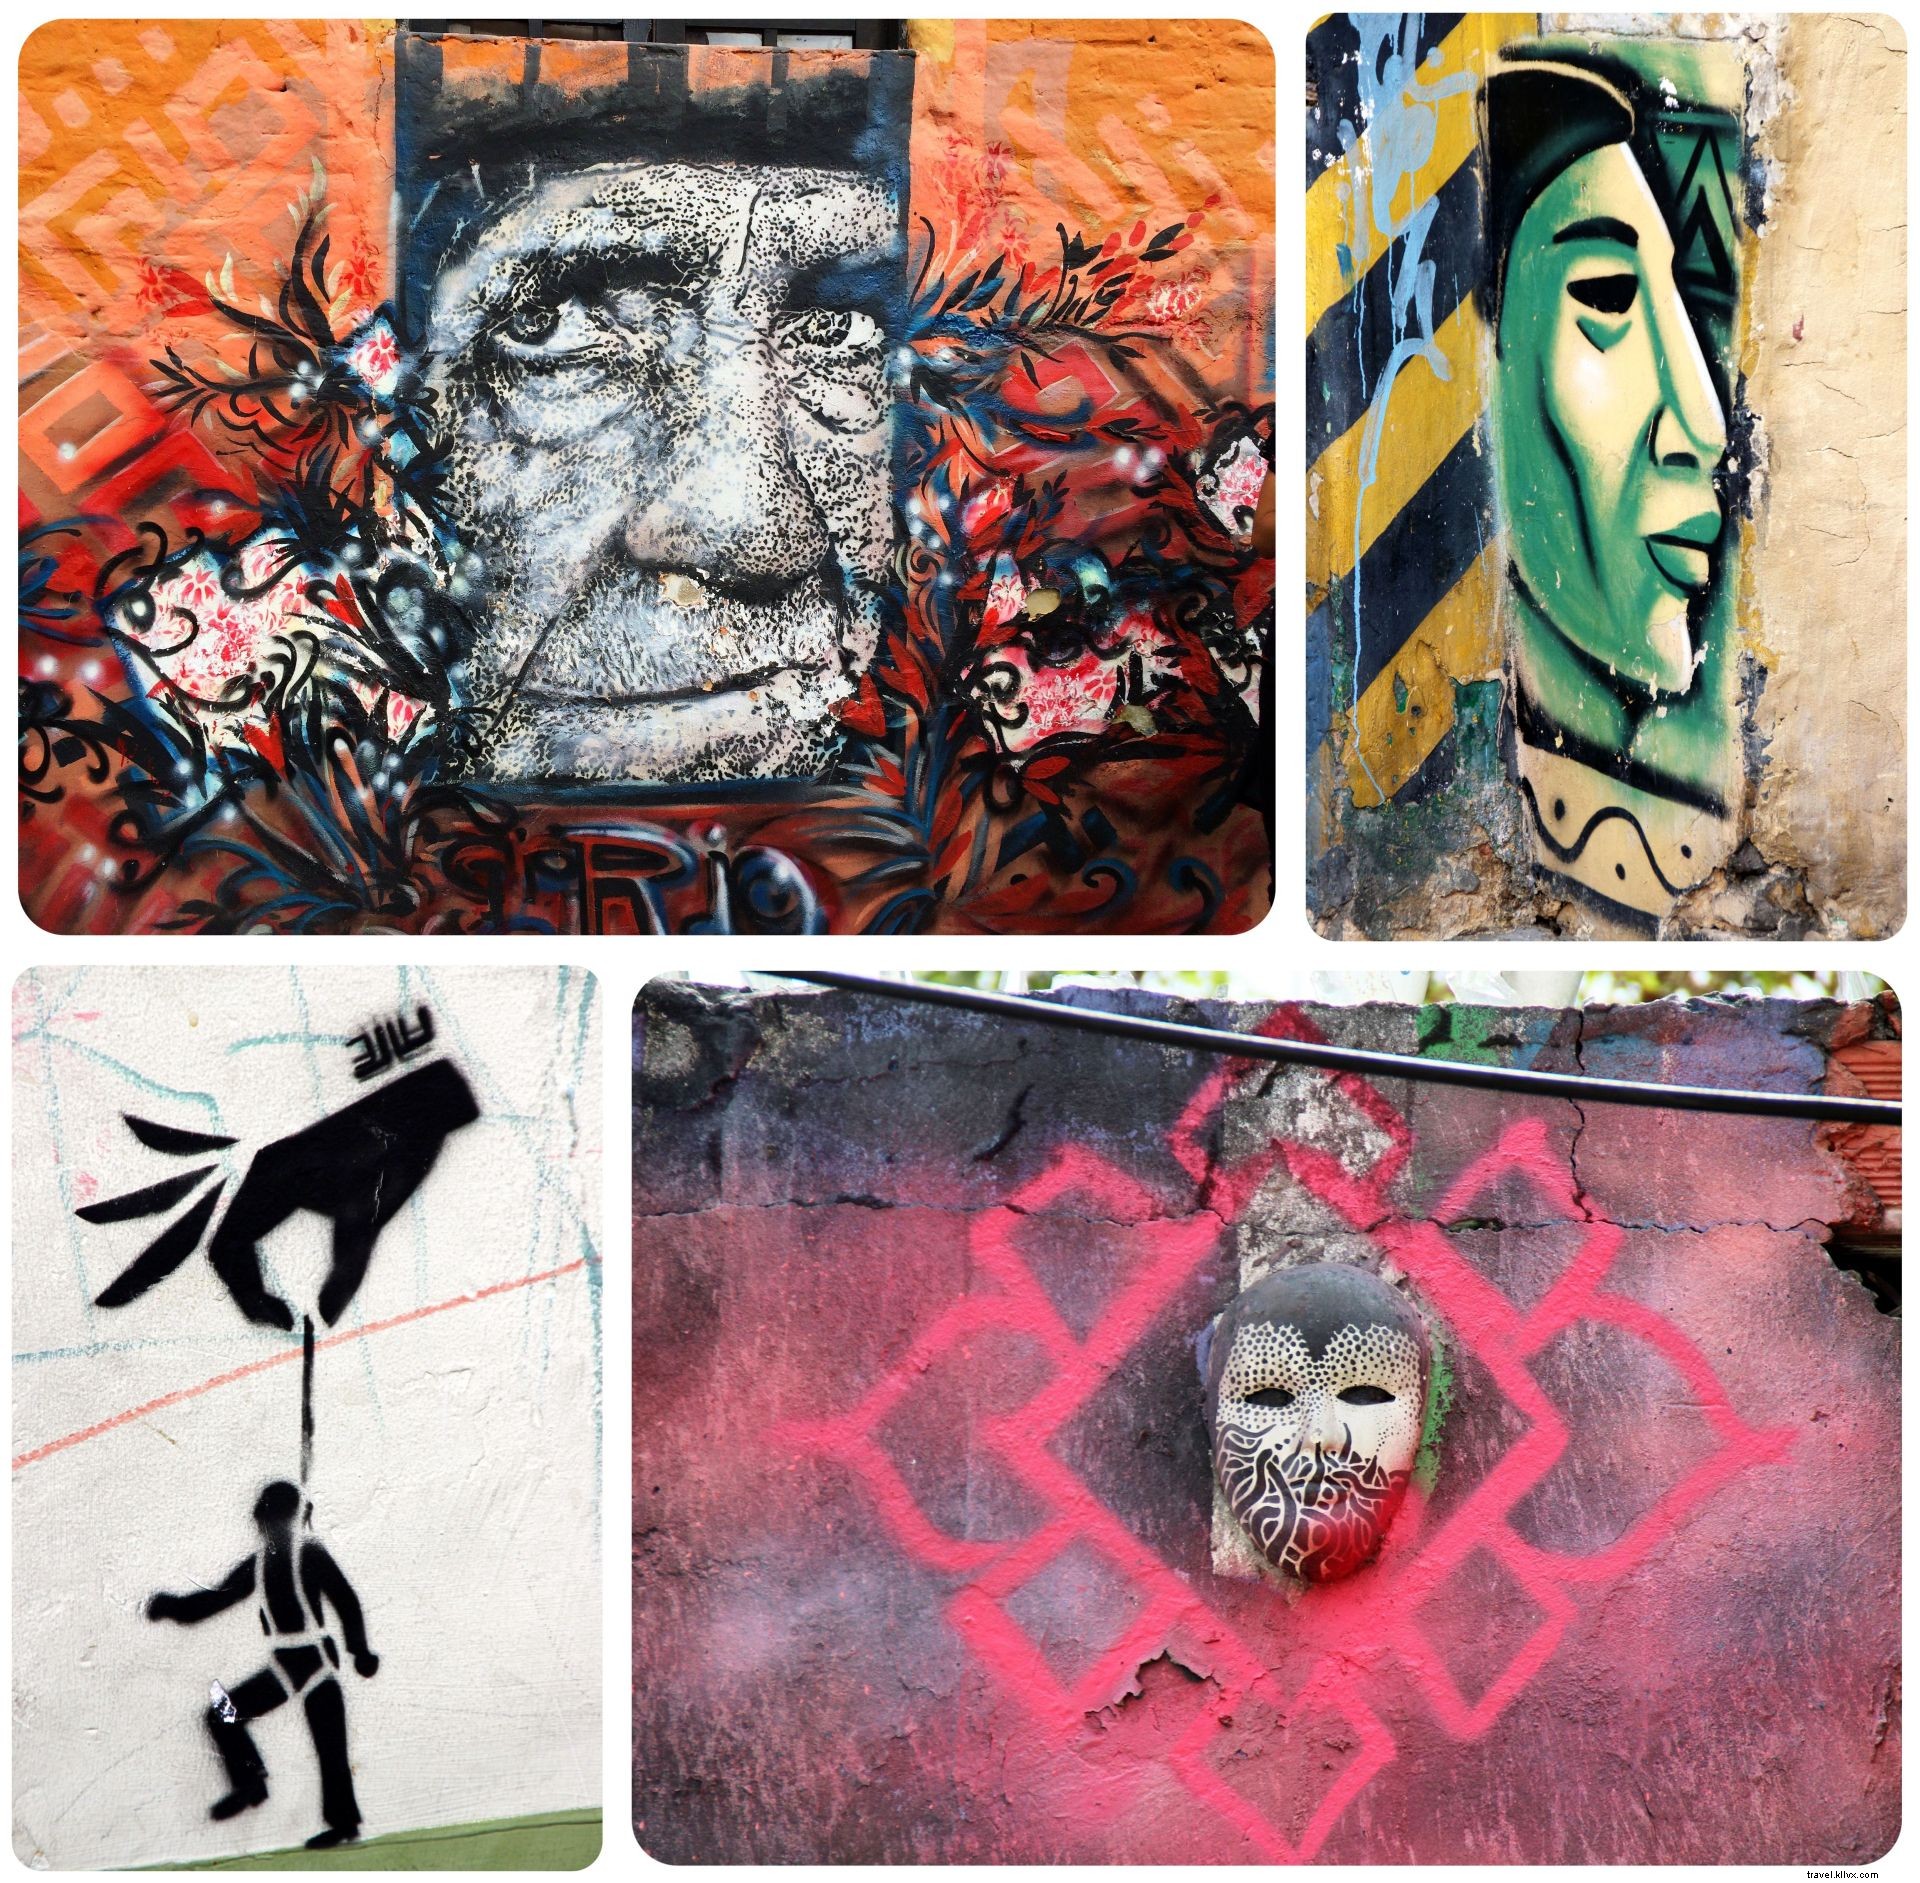 Bogota, Kolombia:Kejutan yang Menyenangkan